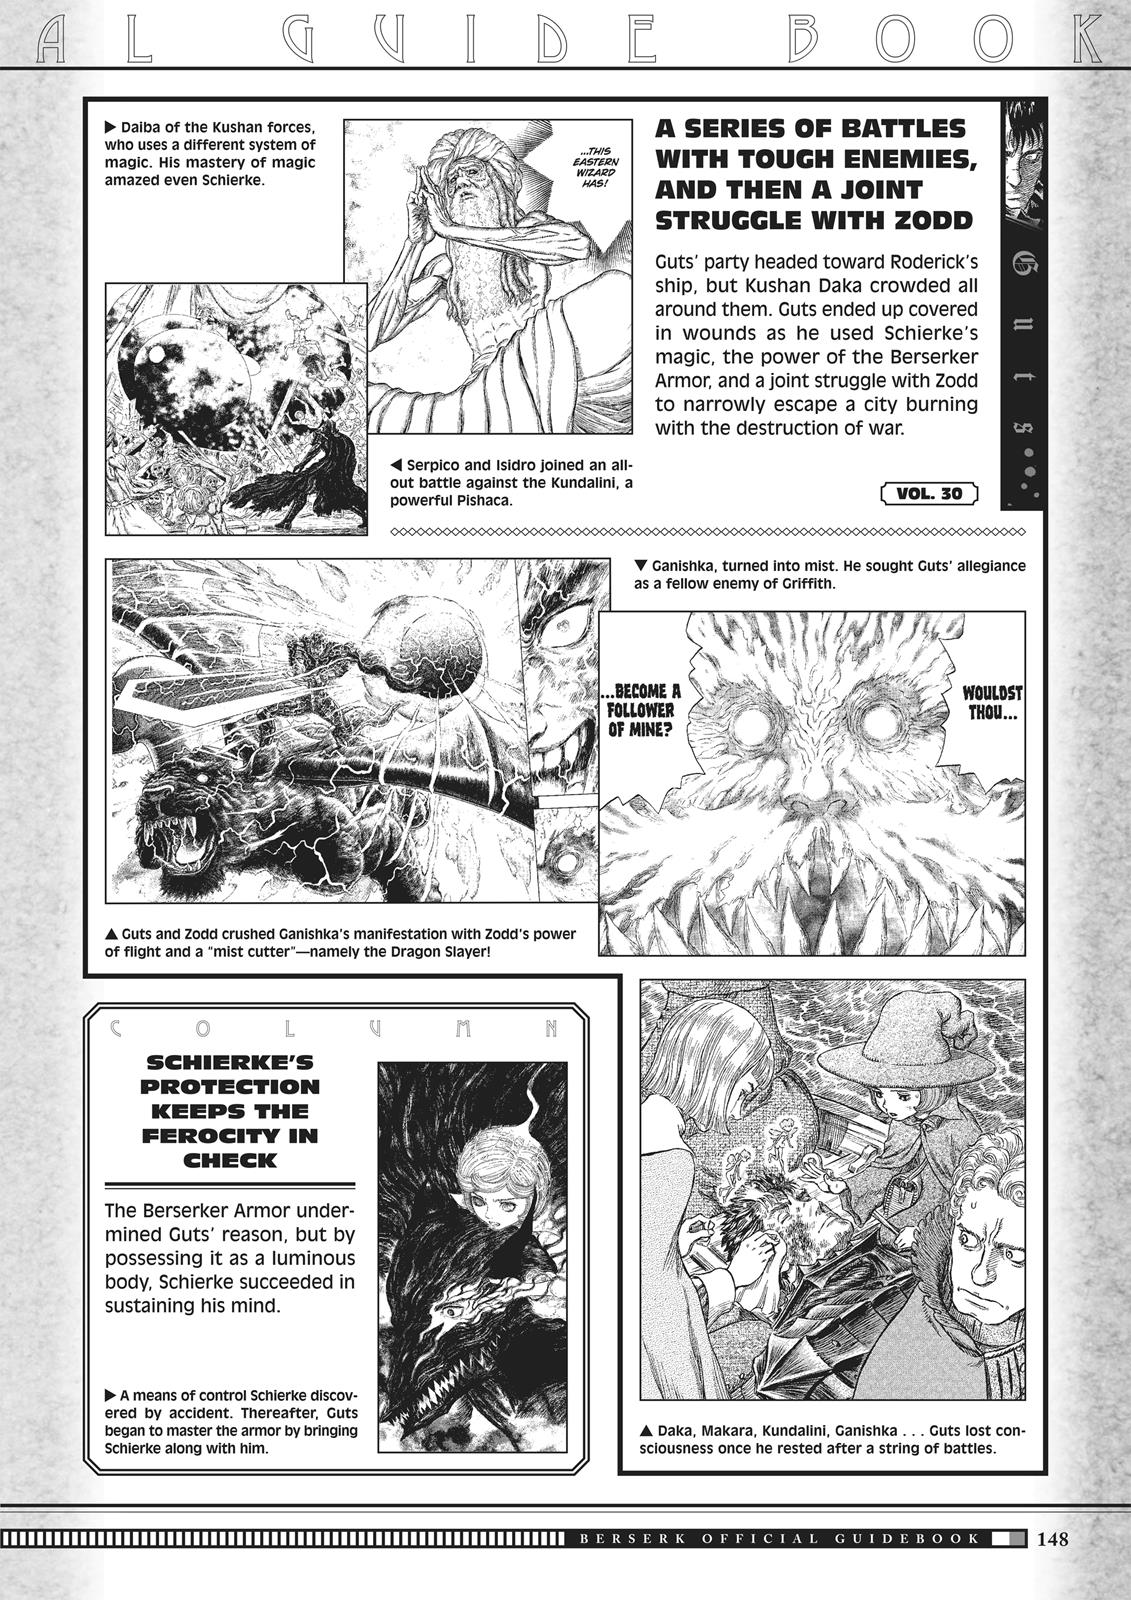 Berserk Manga Chapter 350.5 image 146